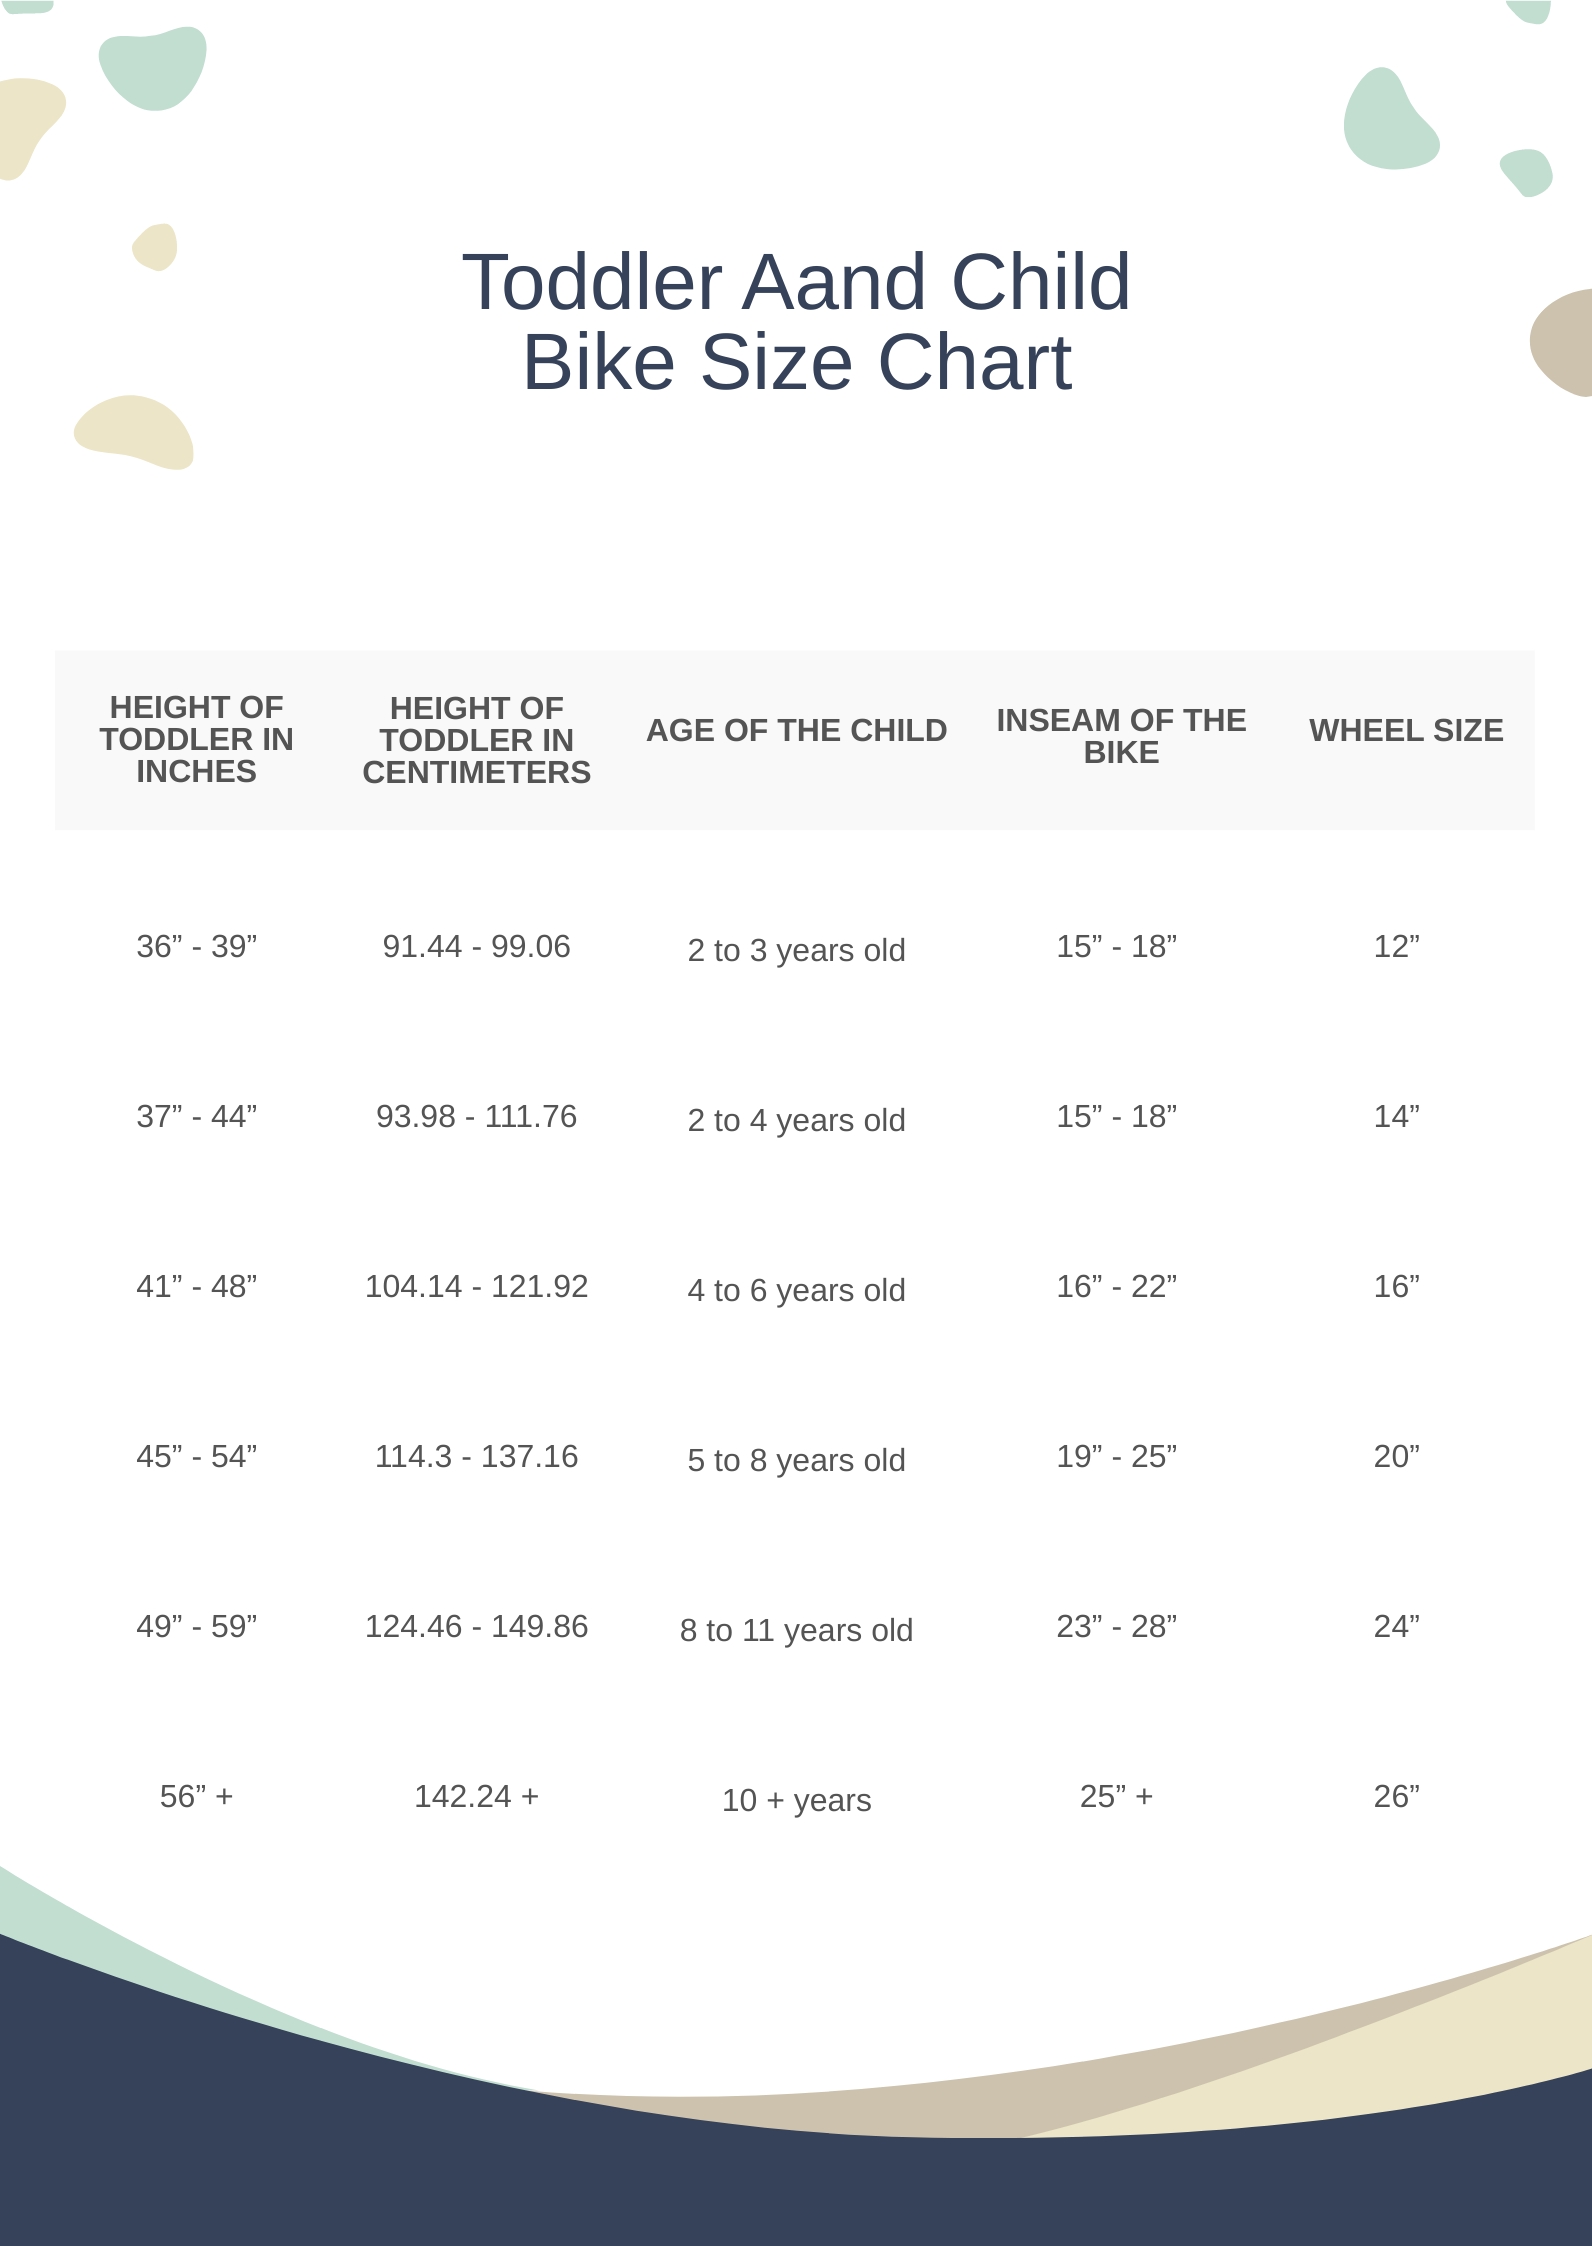 Free Bike Wheel Size Chart - Download in PDF | Template.net